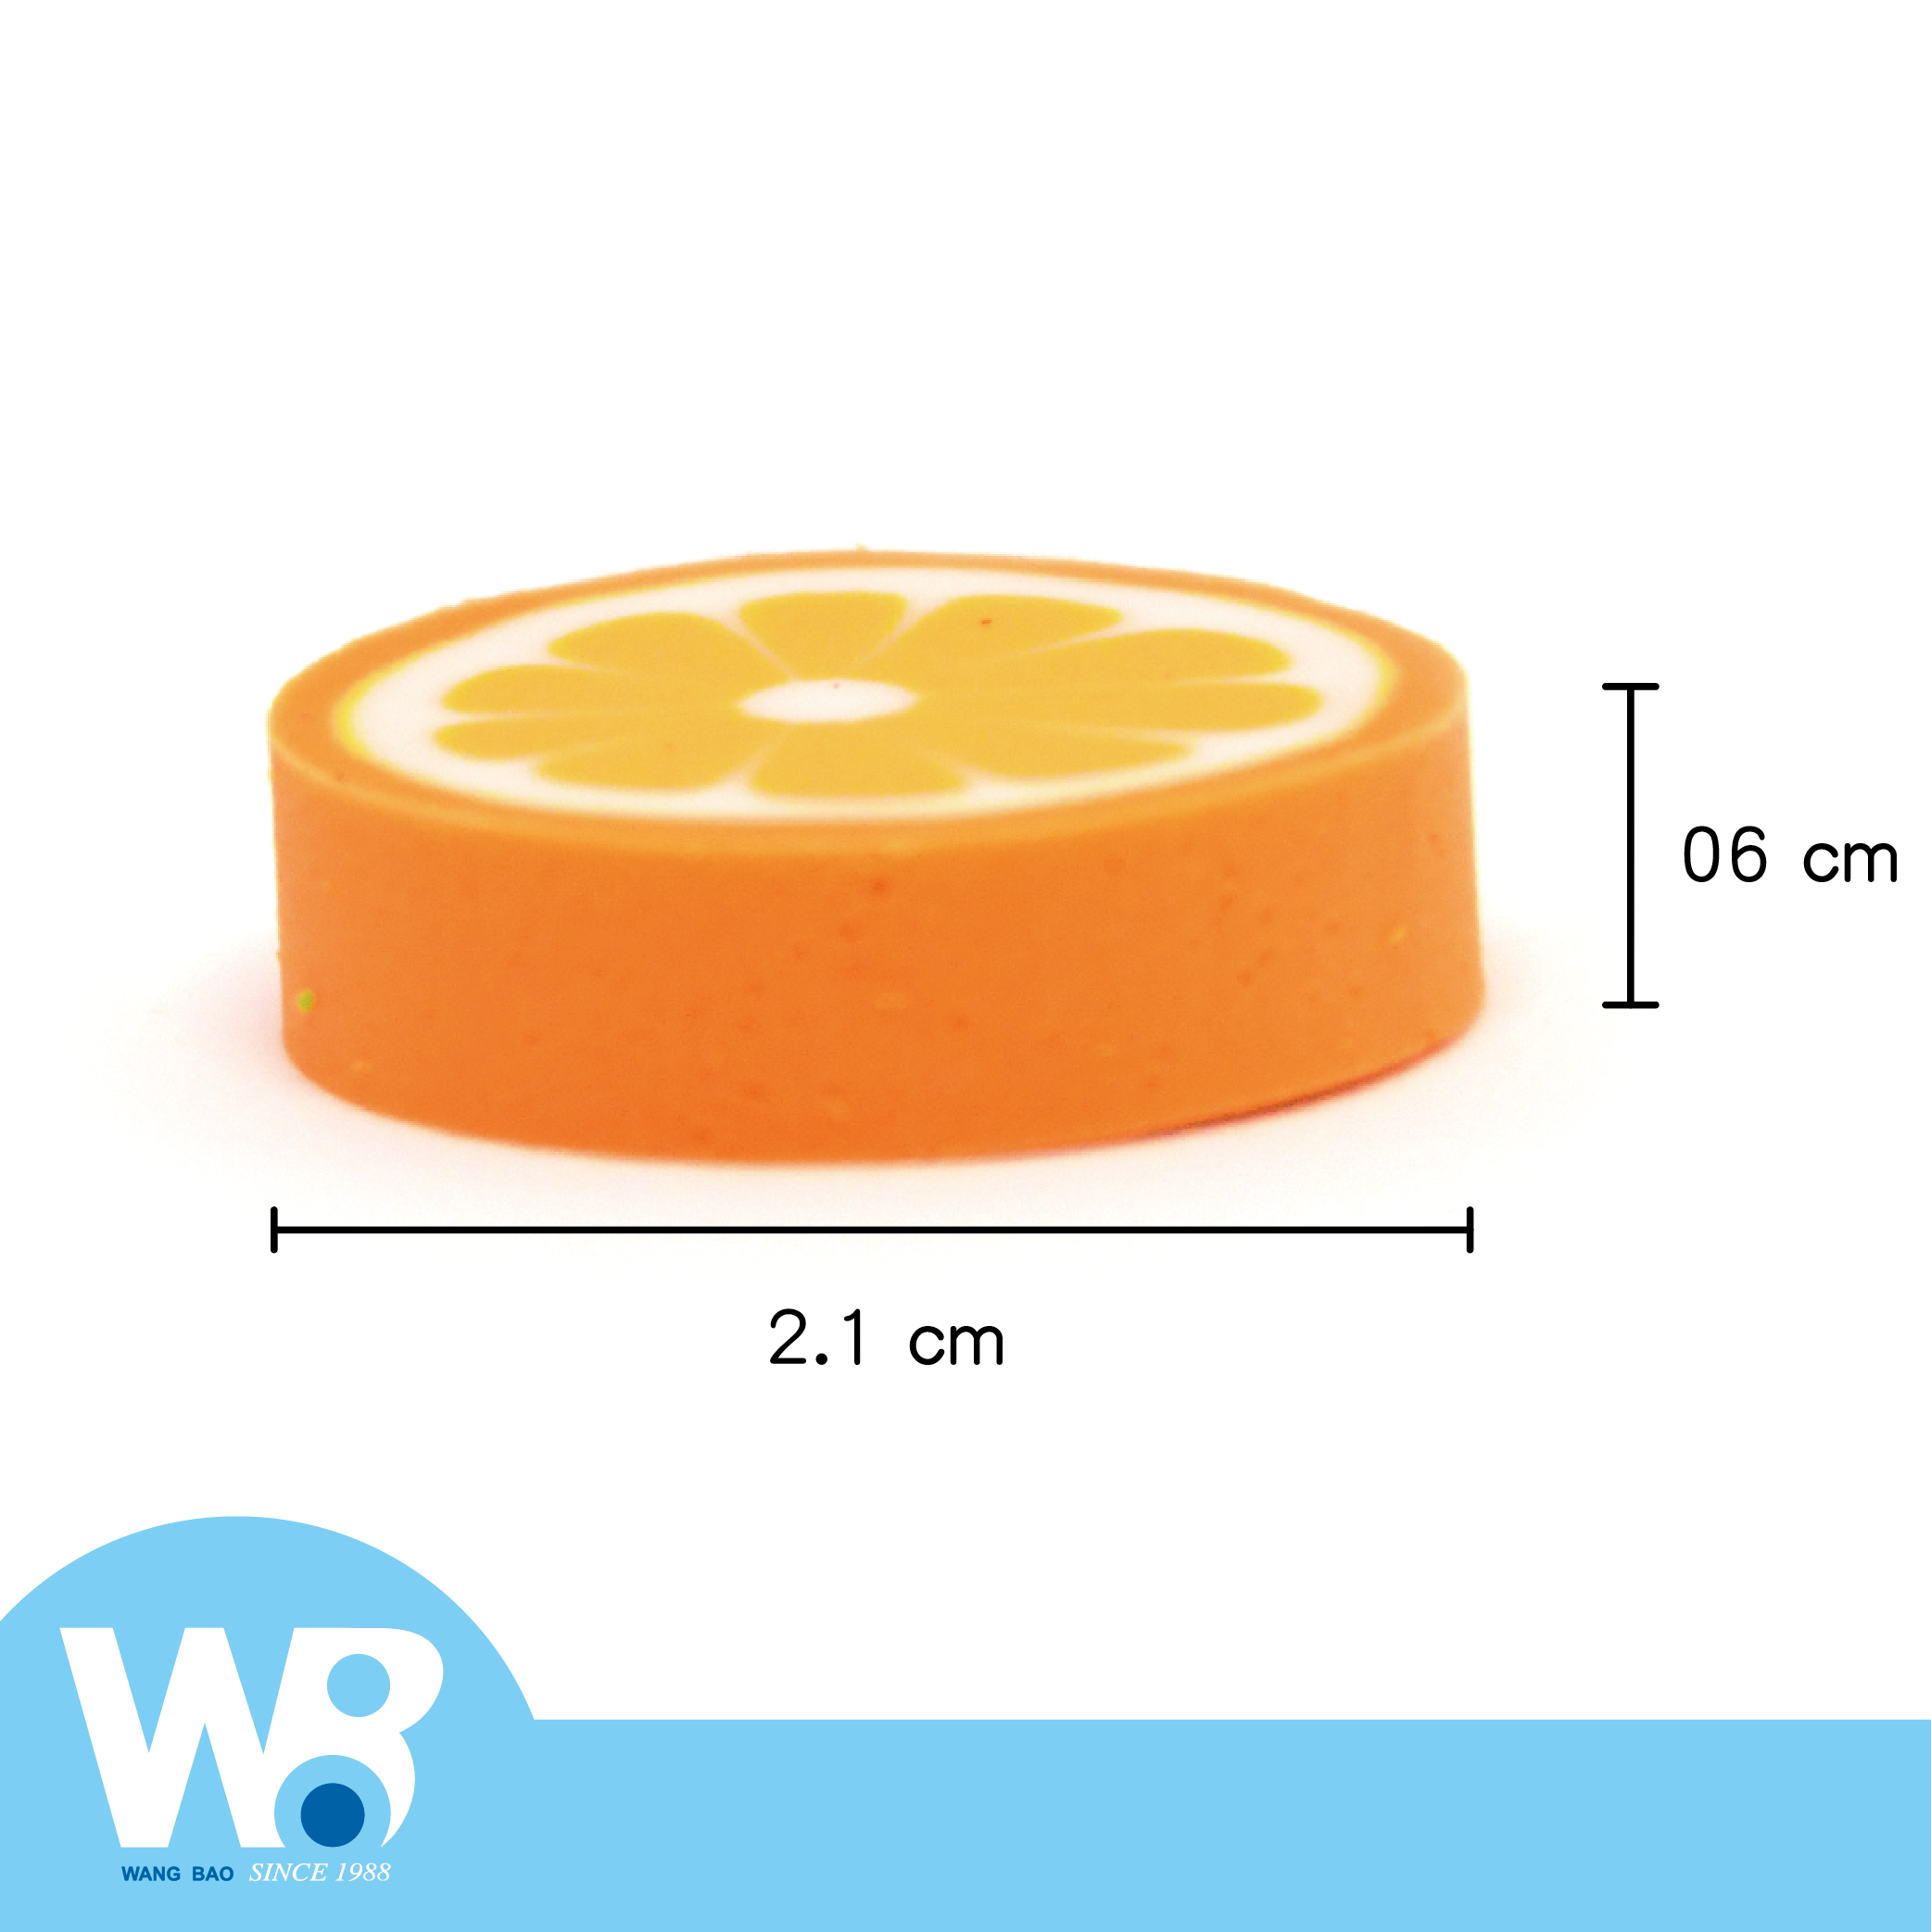 OEM-迷你造型水果橡皮擦-橘子